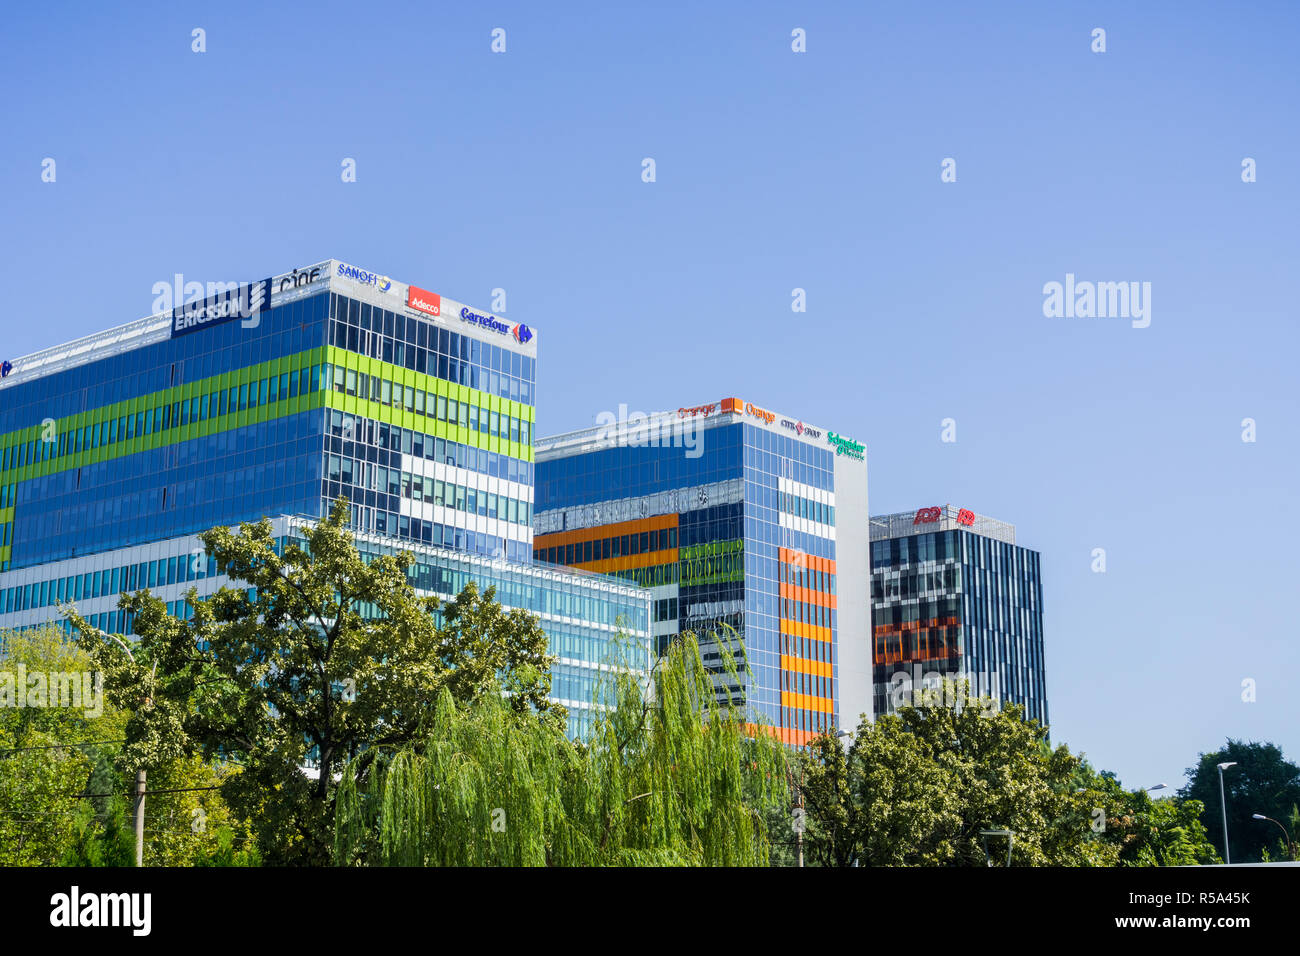 15 septembre 2017, Bucarest/Roumanie - immeubles de bureaux modernes dans la partie nord de la ville Banque D'Images